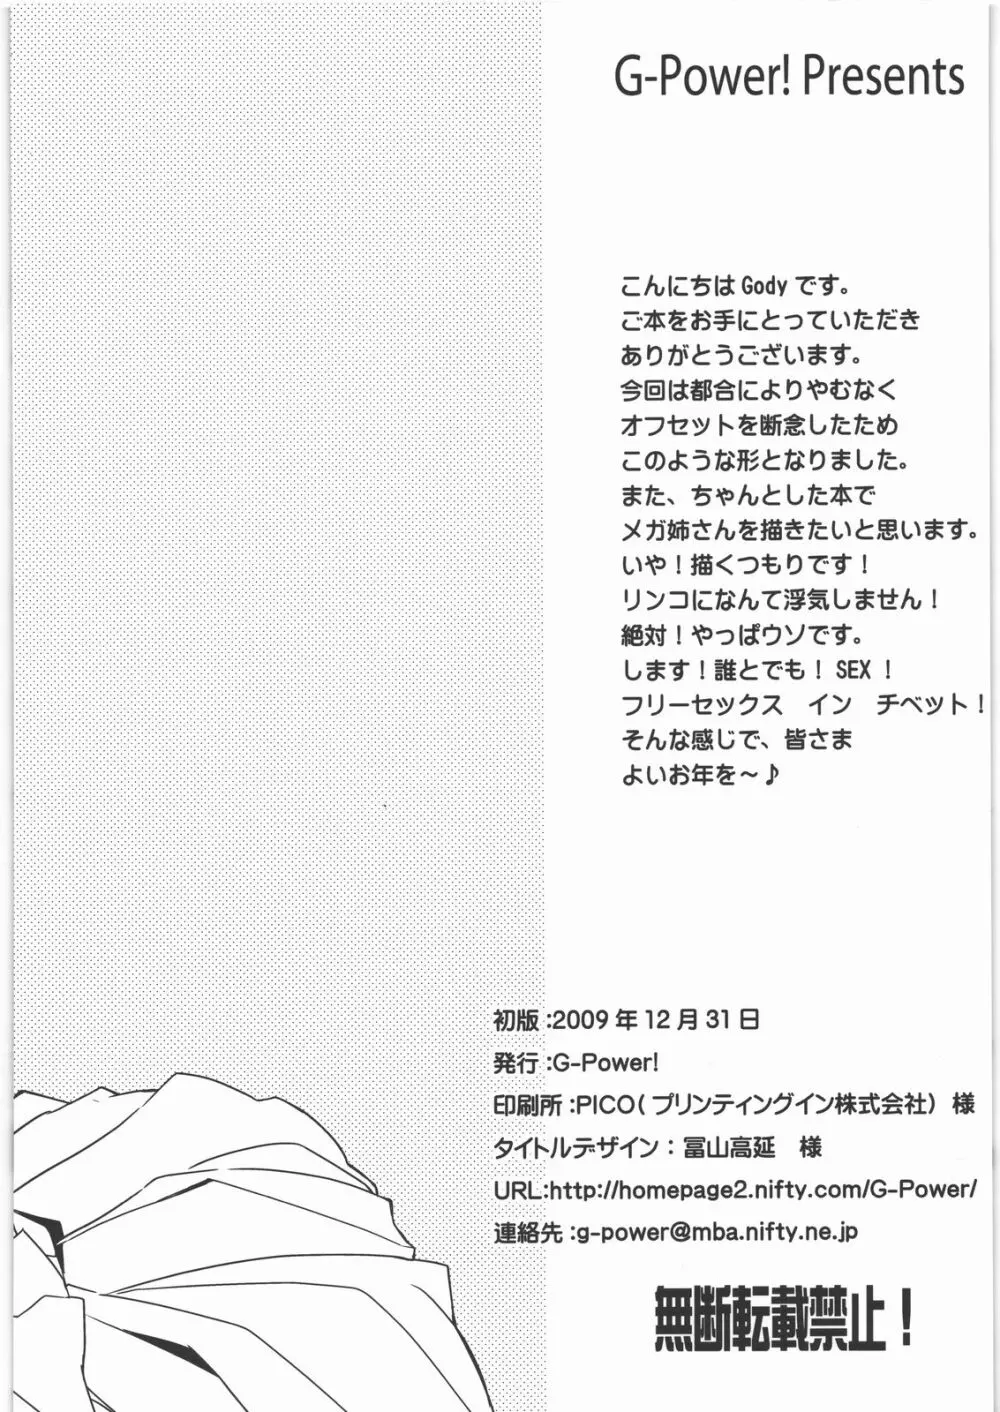 めがねネ beta版 - page16